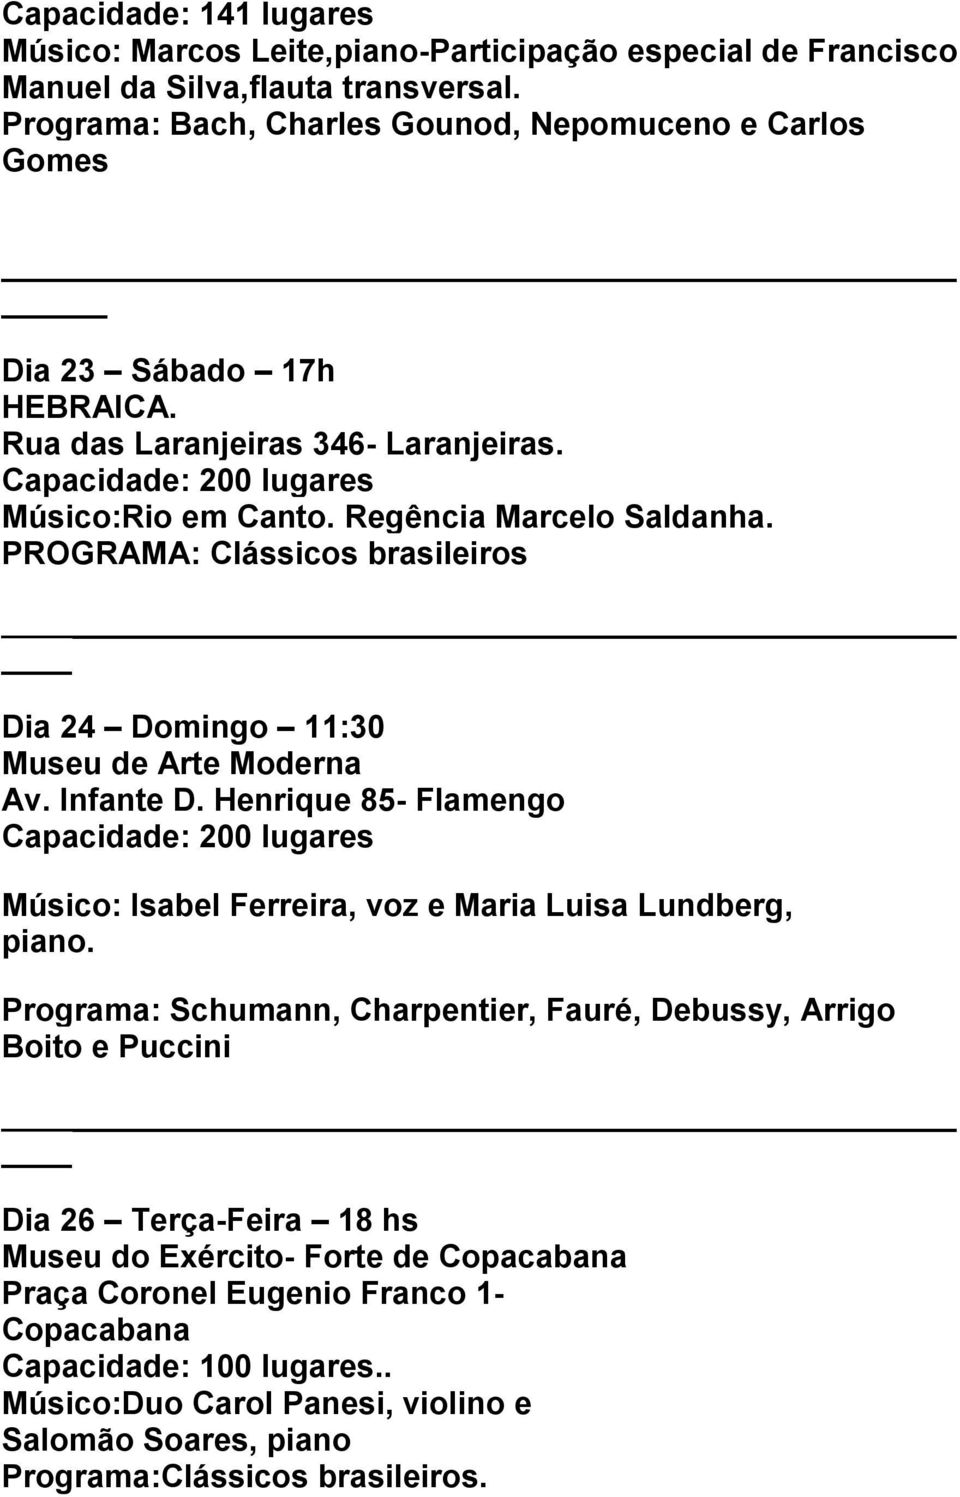 PROGRAMA: Clássicos brasileiros Dia 24 Domingo 11:30 Museu de Arte Moderna Av. Infante D. Henrique 85- Flamengo Músico: Isabel Ferreira, voz e Maria Luisa Lundberg, piano.